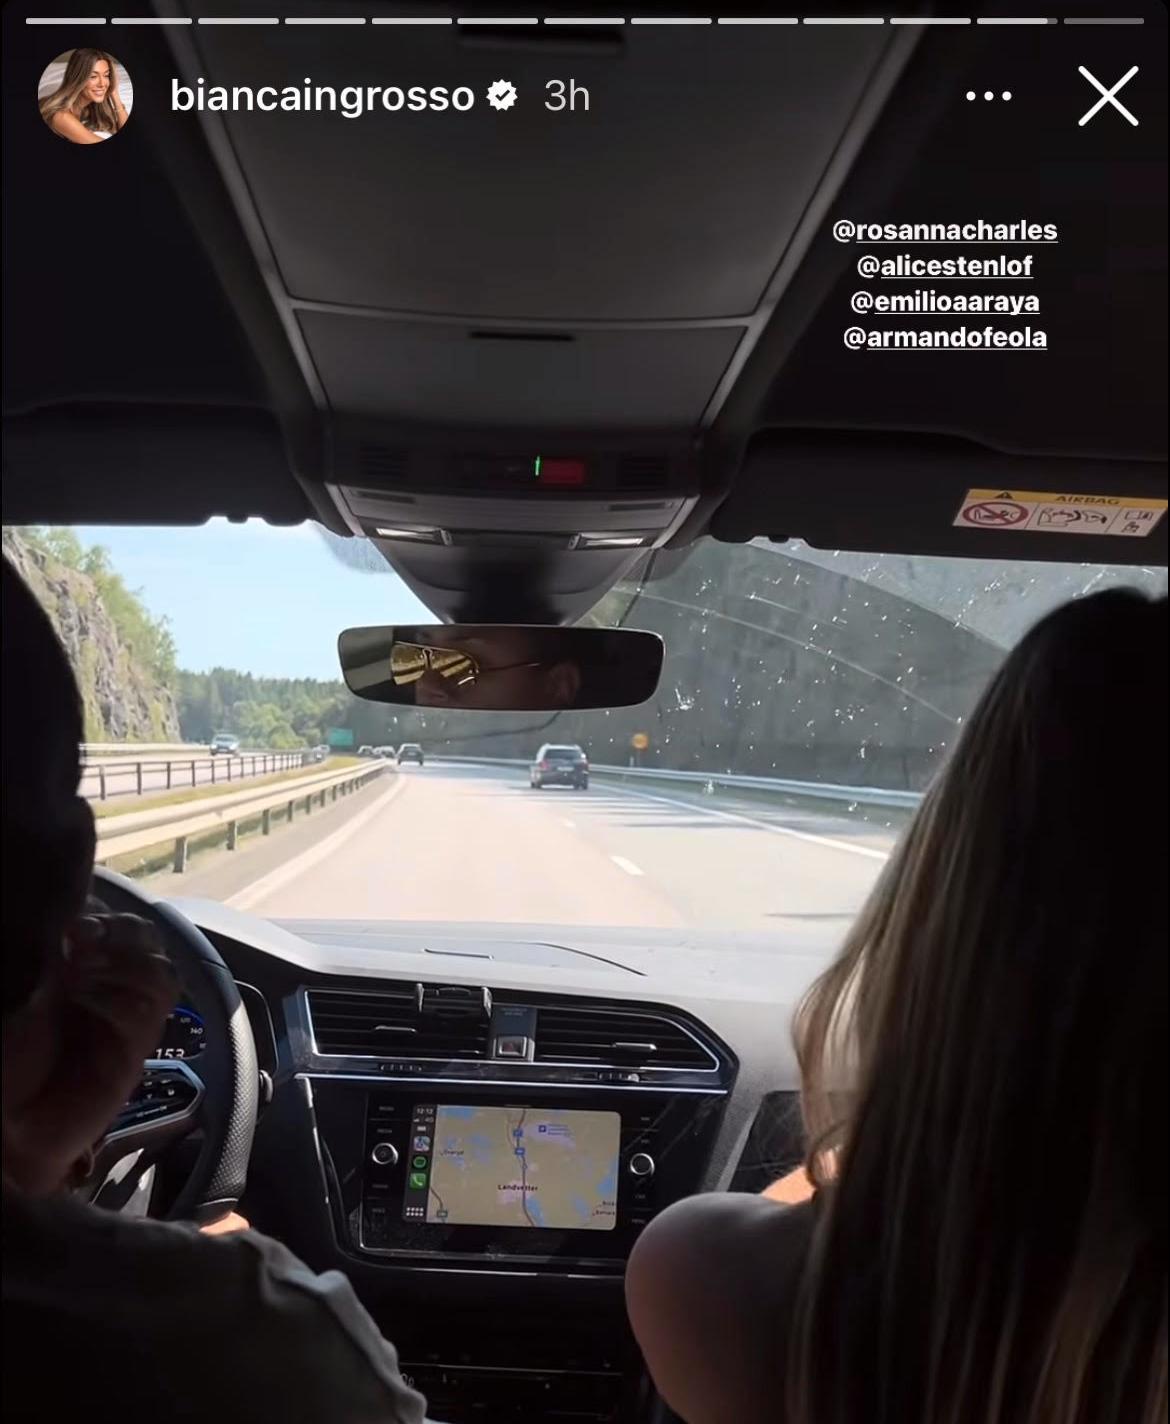 Videon där Rosanna Charles kör för fort togs senare bort från Bianca Ingrossos Instagram. 